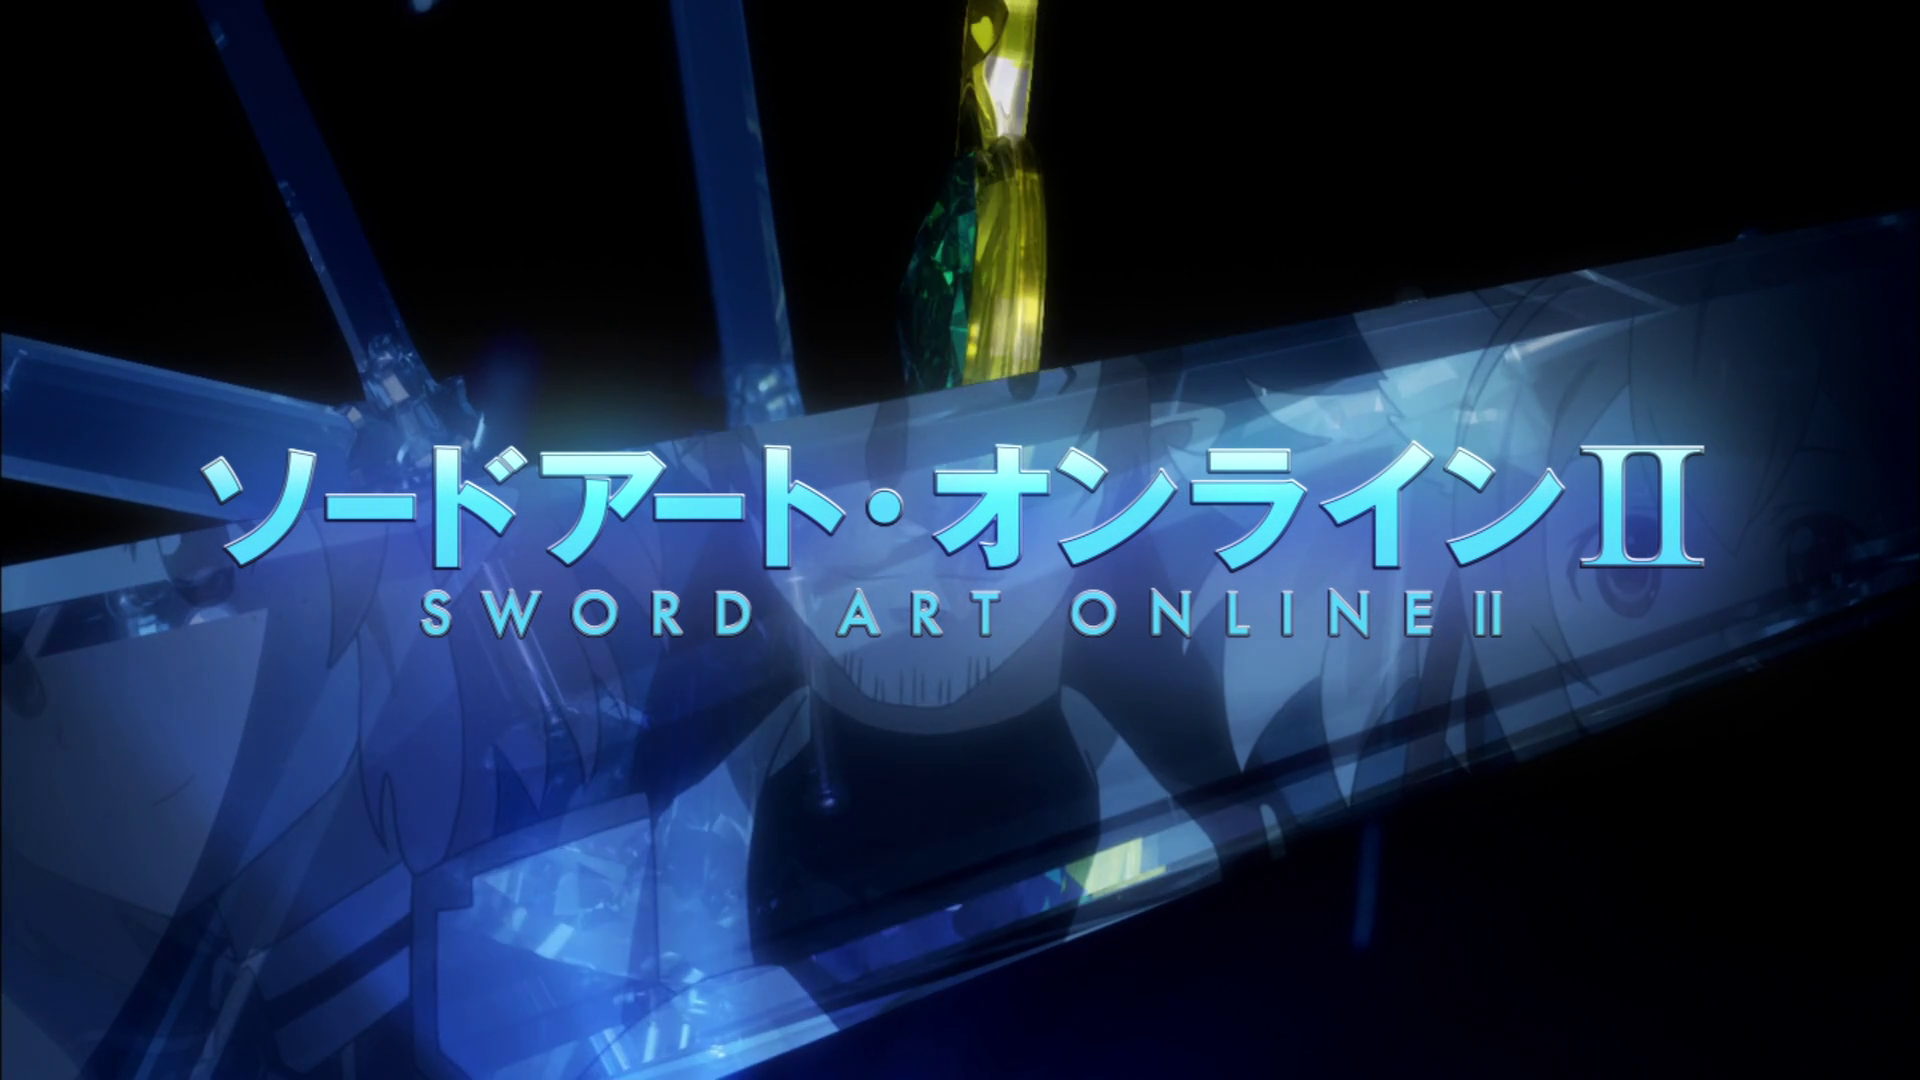 Sword Art Online II E15 (6)